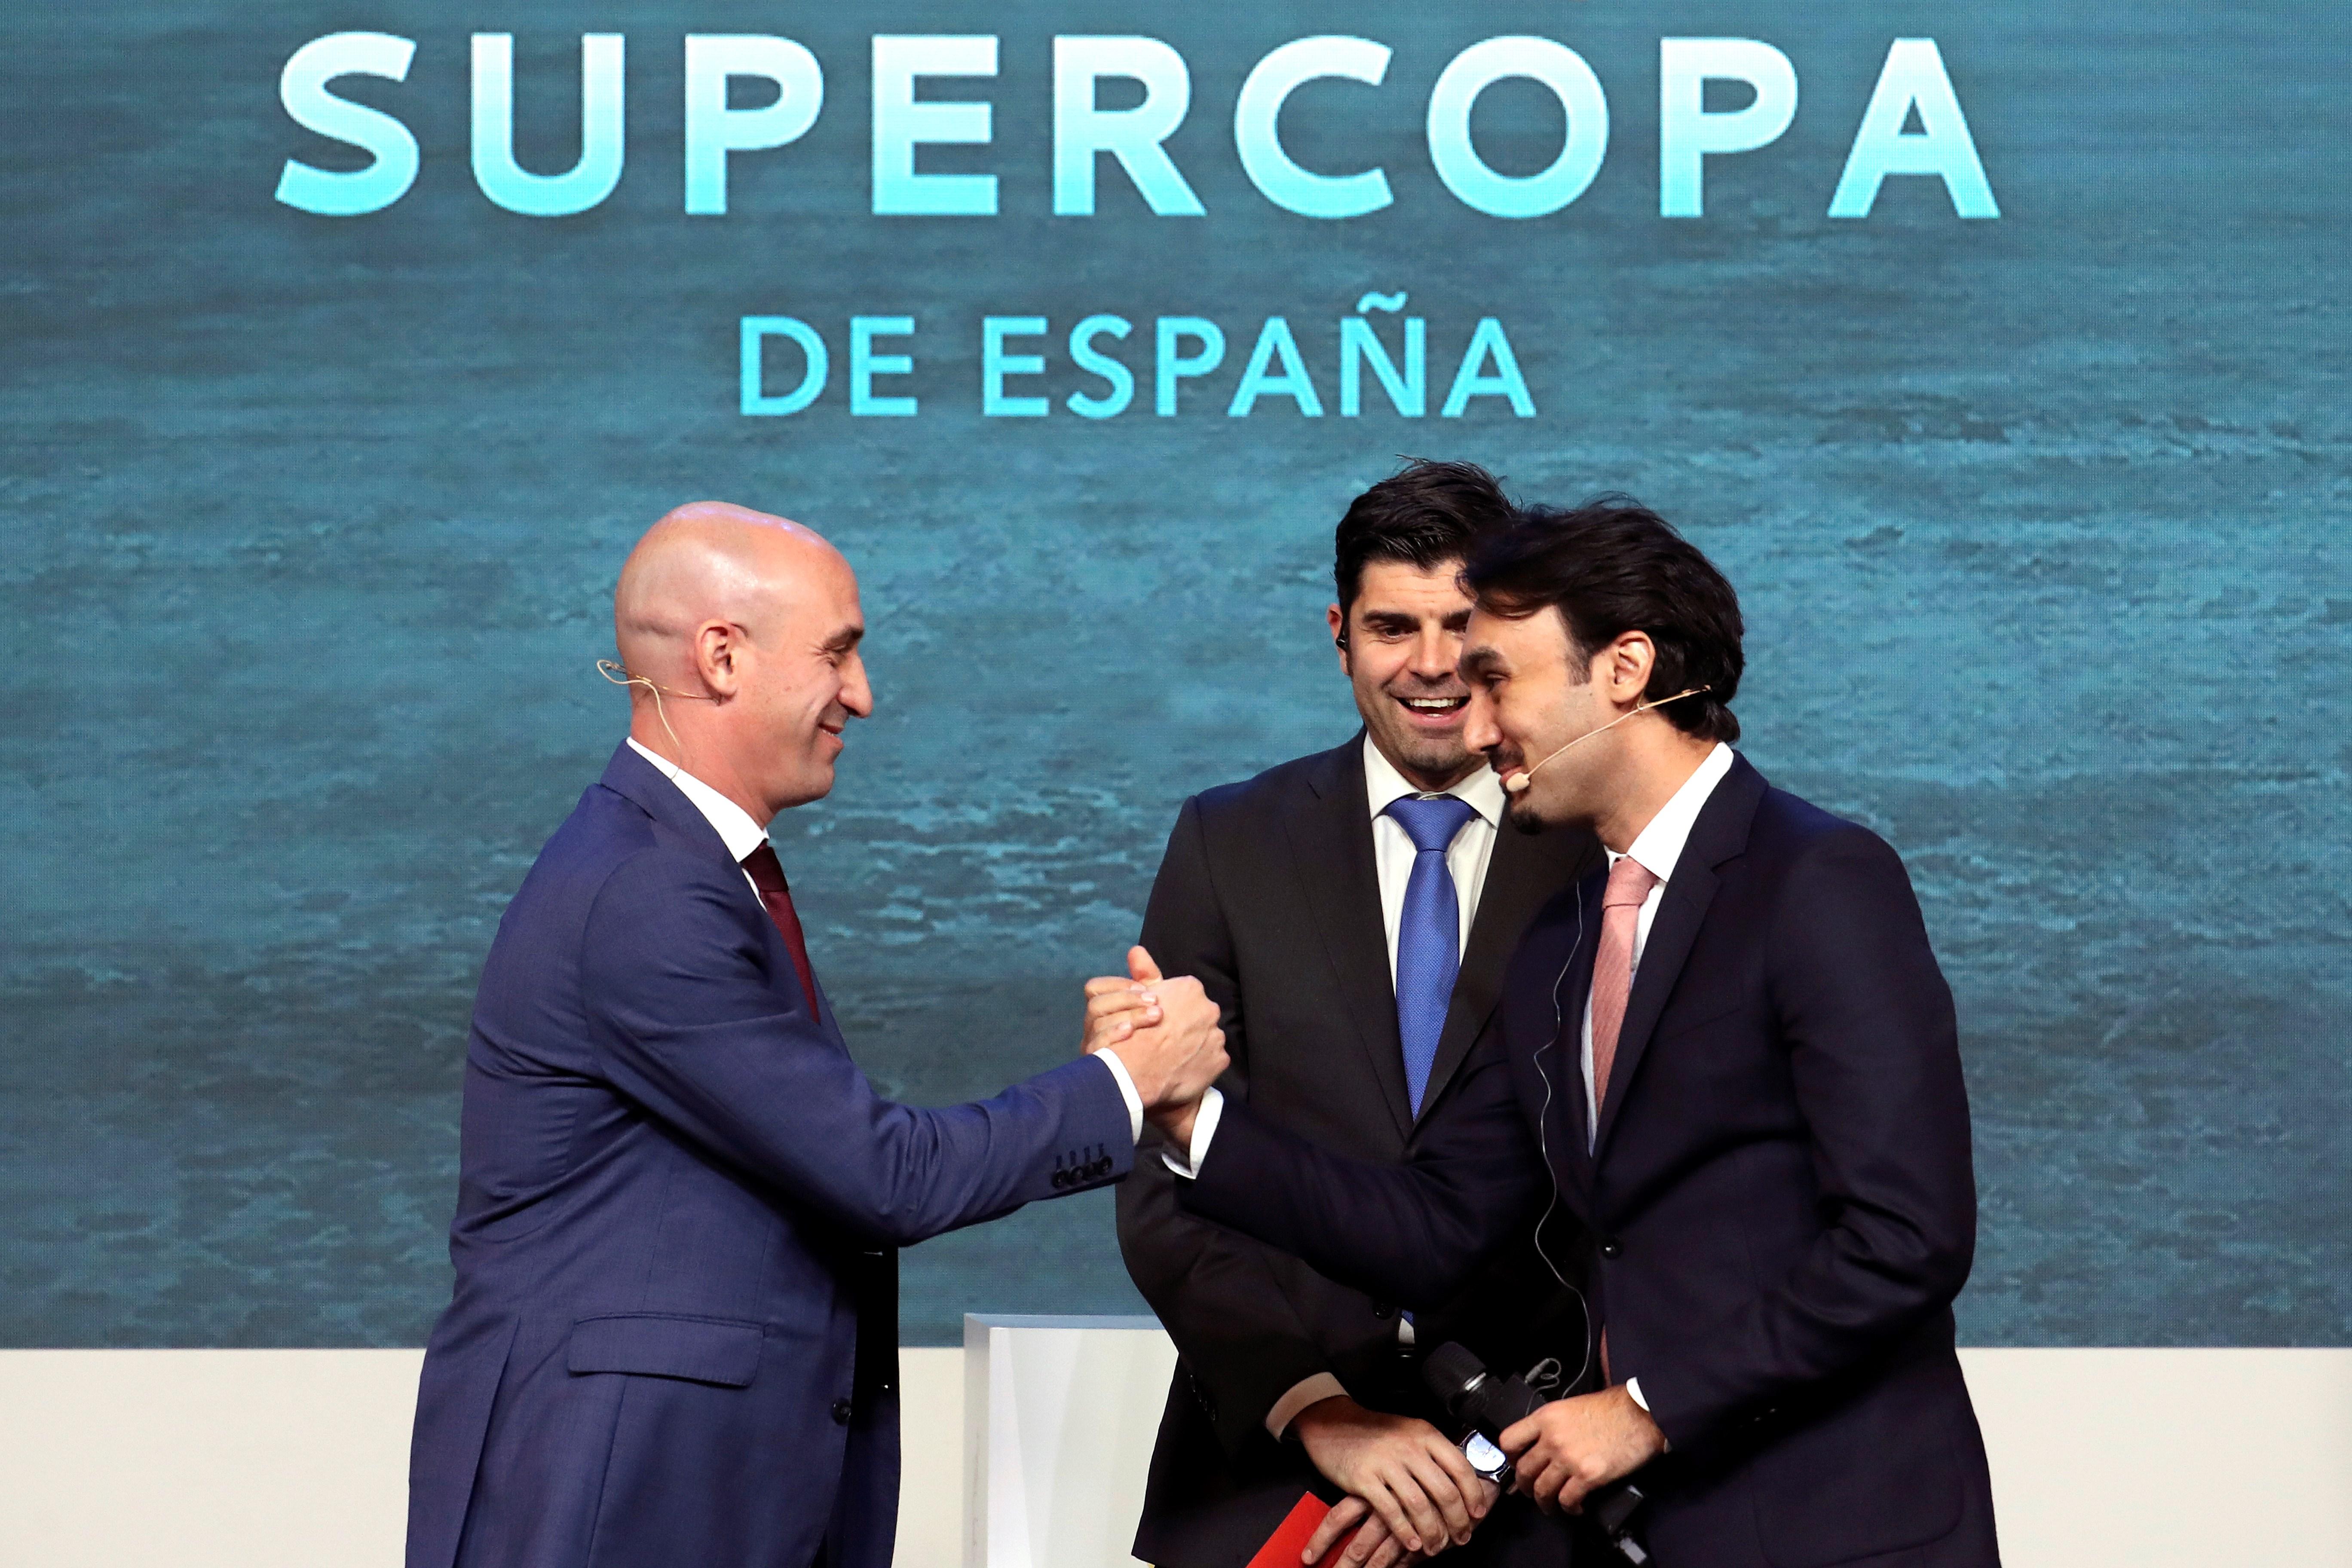 TVE no emitirá la Supercopa de España en la Arabia Saudí por "respeto a los derechos humanos"